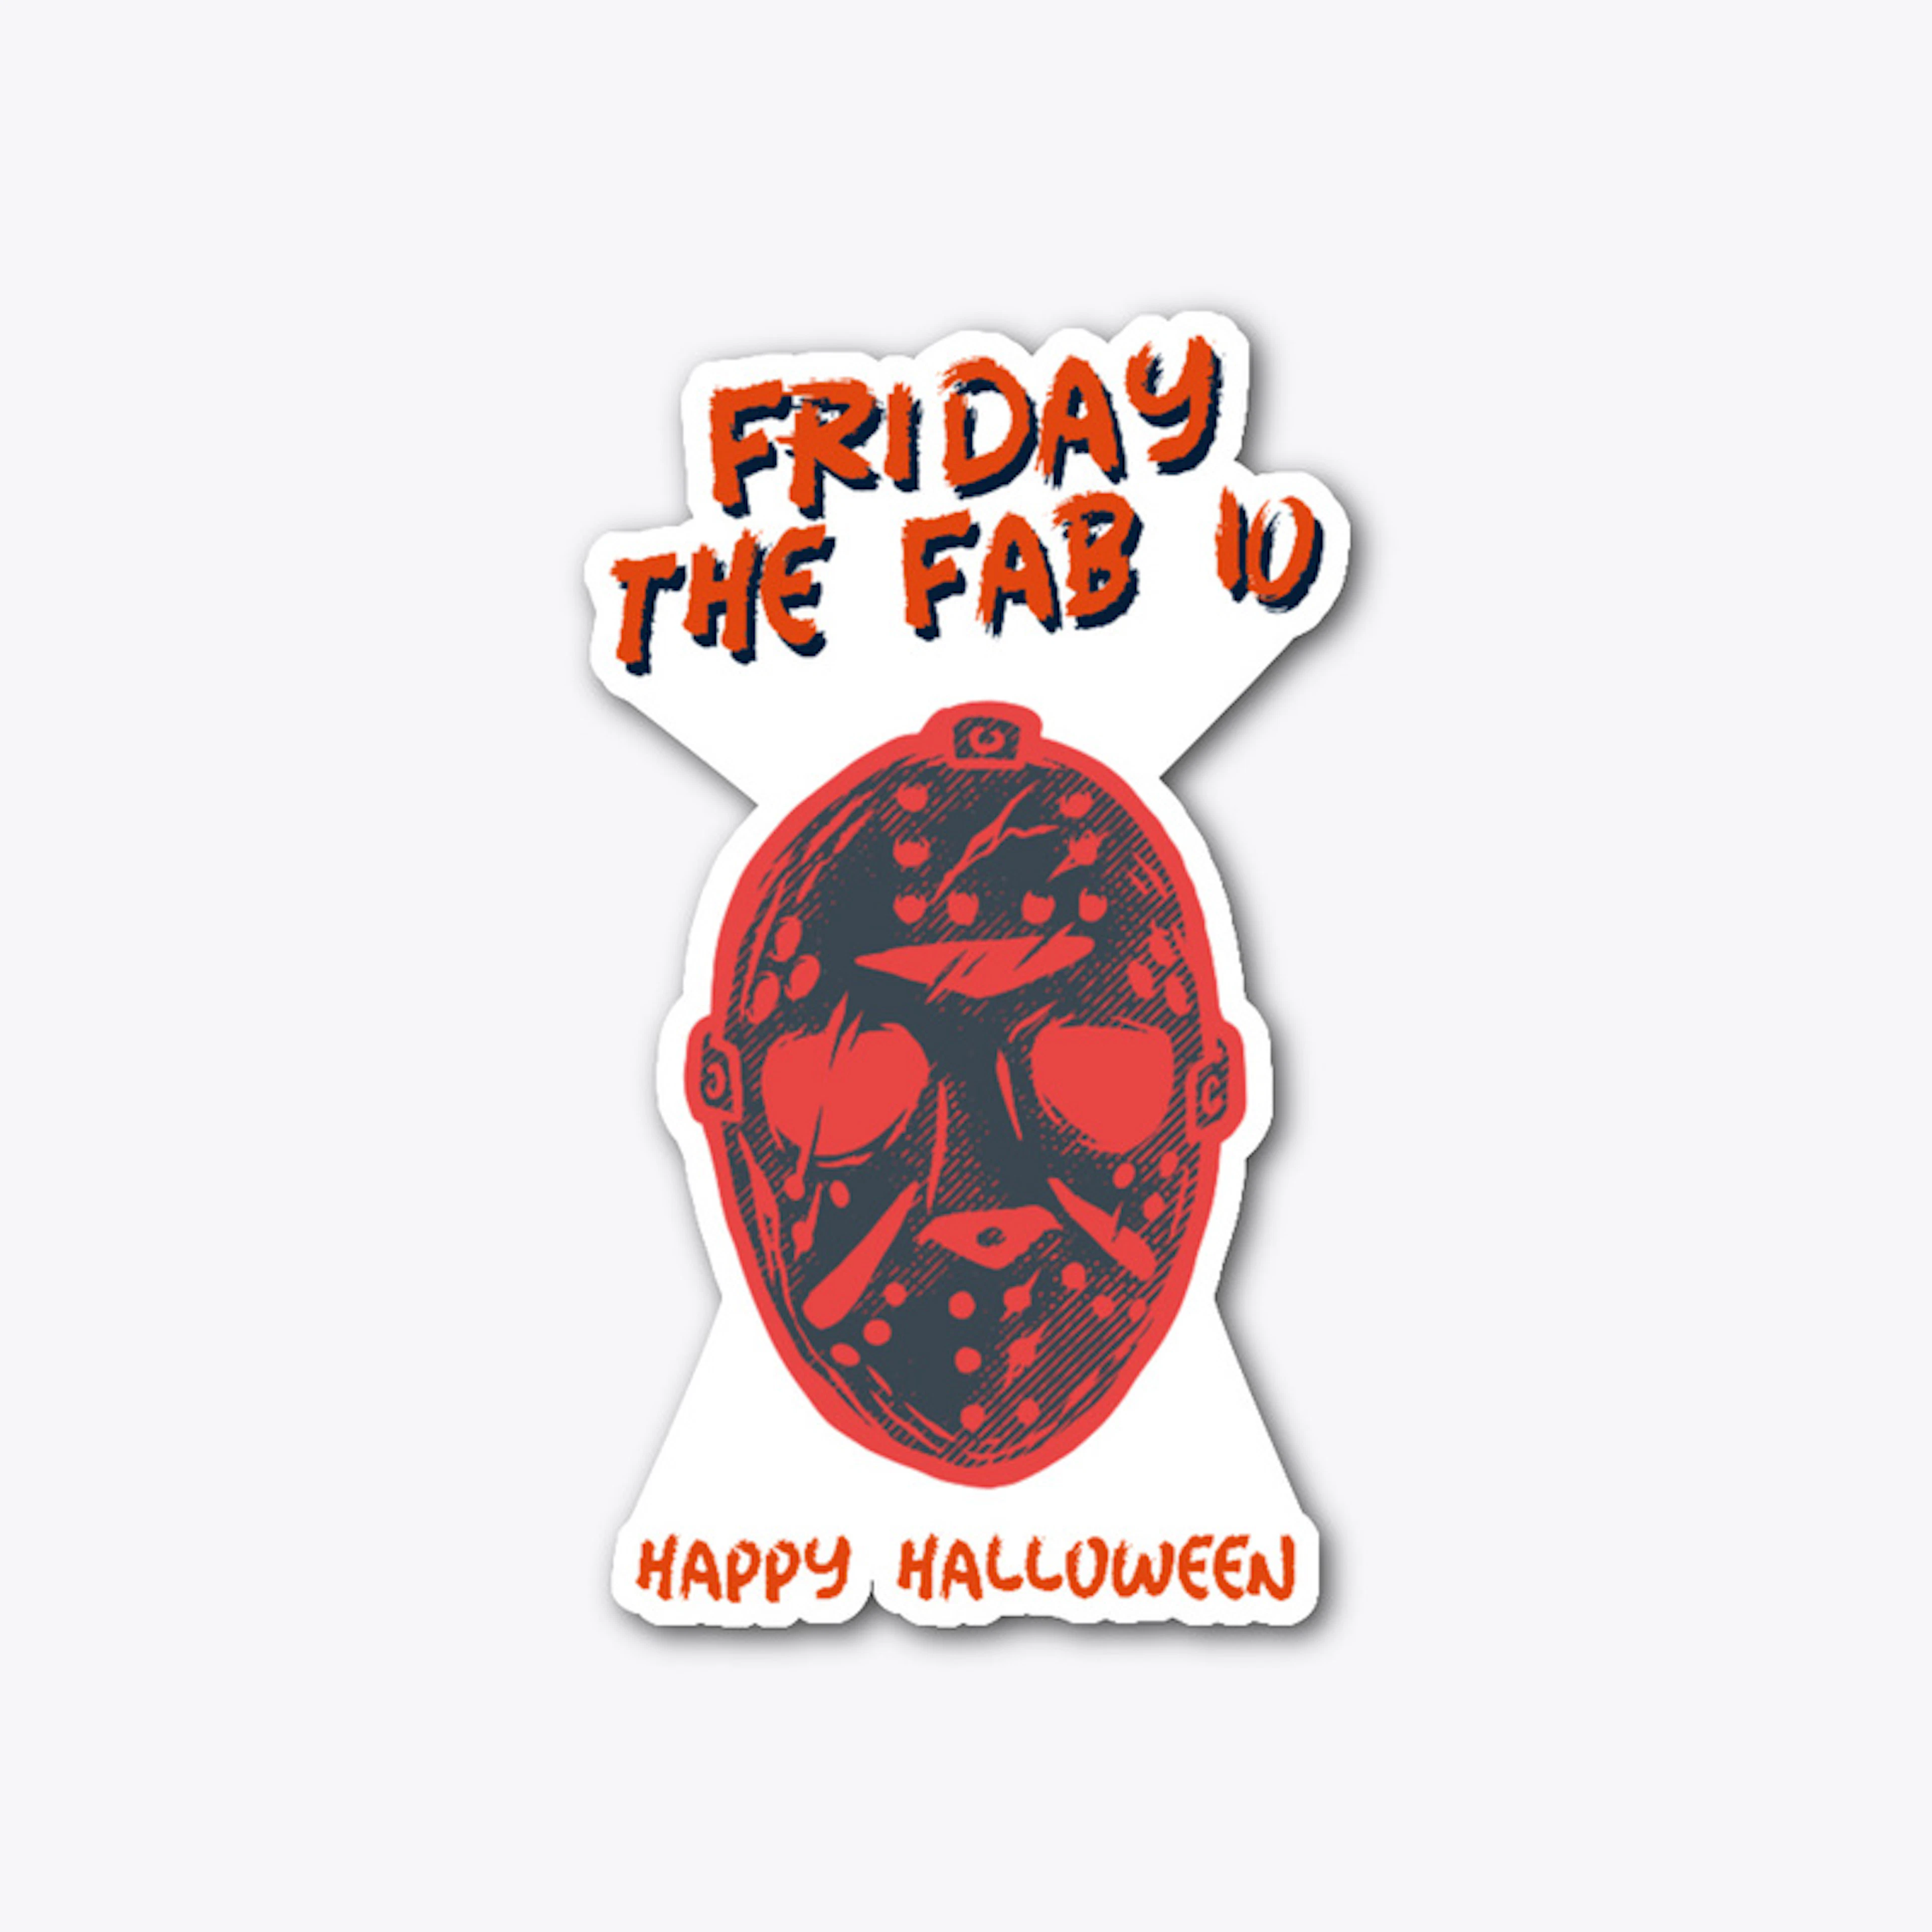 The Fab 10 "Halloween Creepy Head"